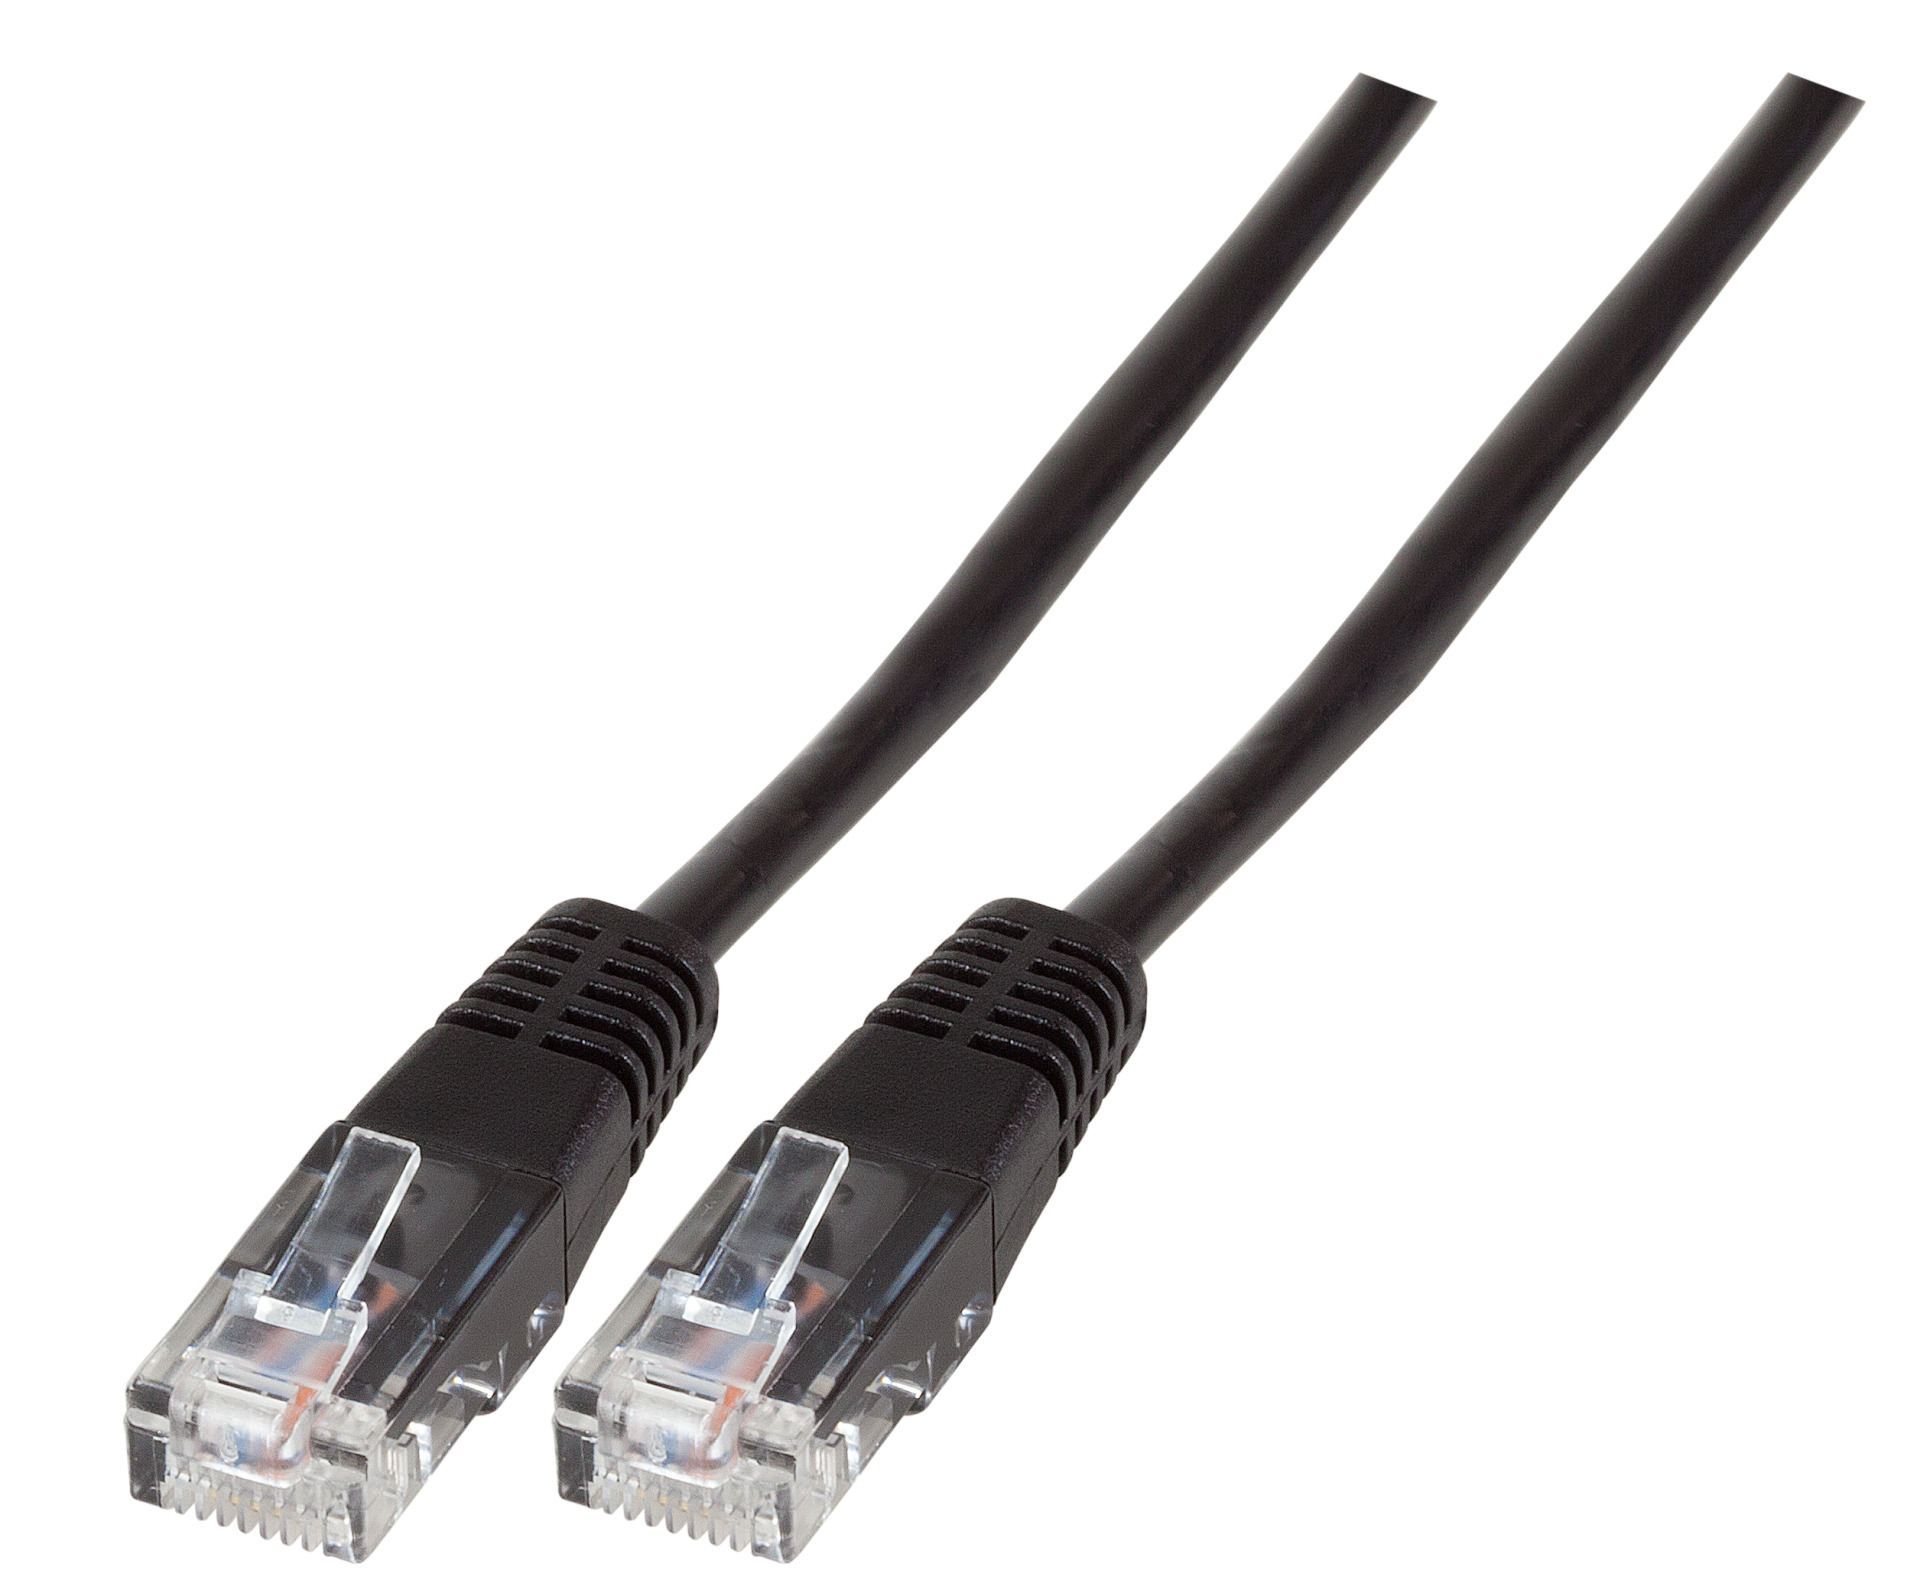 Modular Cable RJ45 (8/4) - RJ45 (8/4), Moulded, Black, 2 m